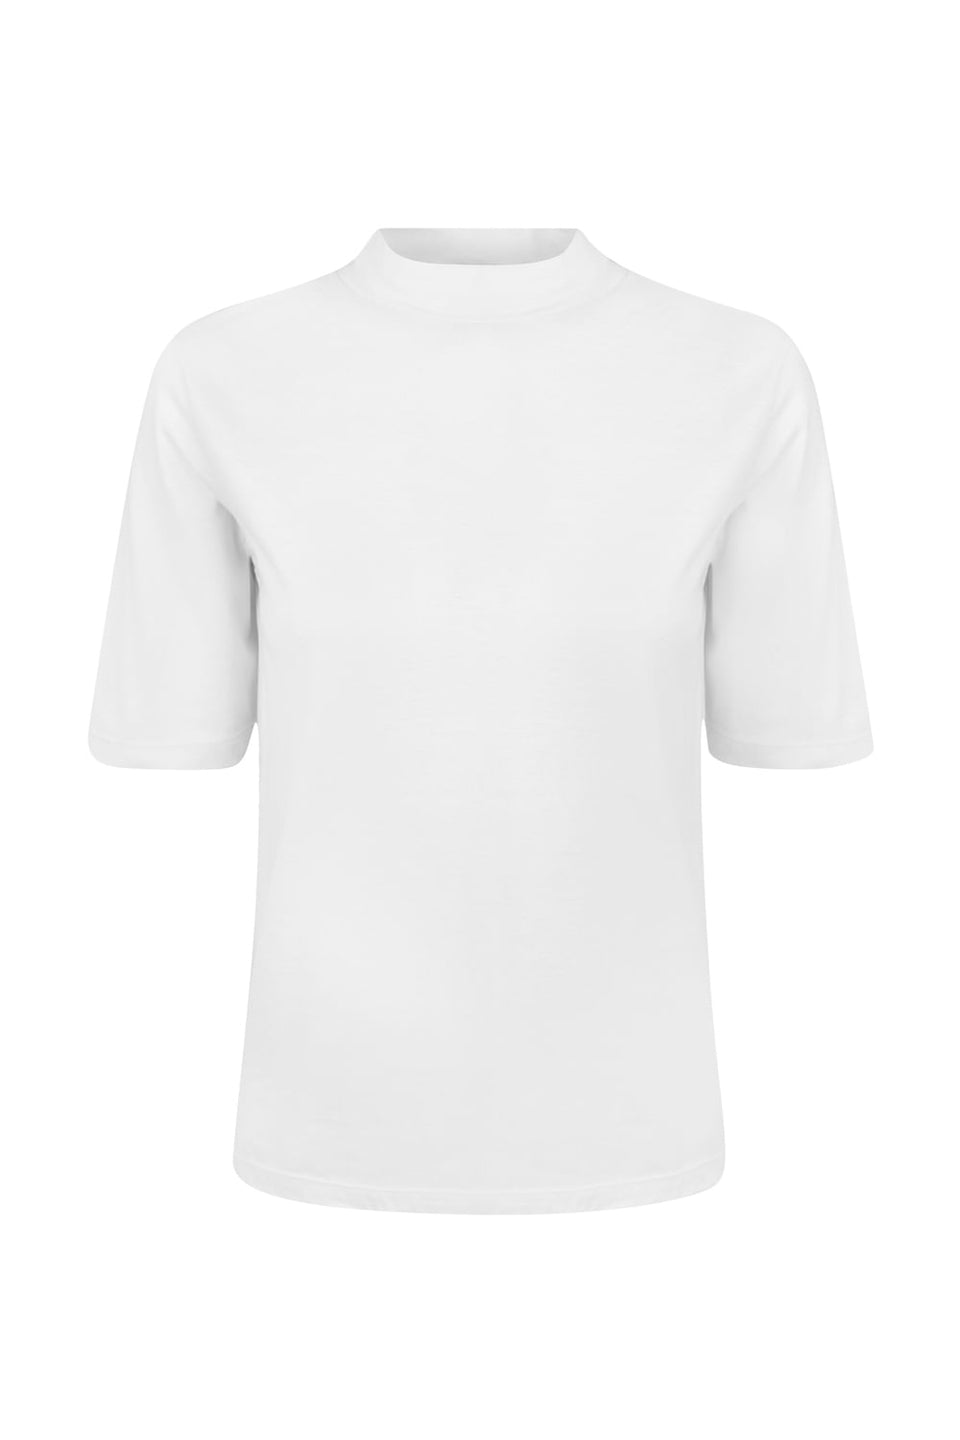 Camiseta Gola Mock Confort Branco